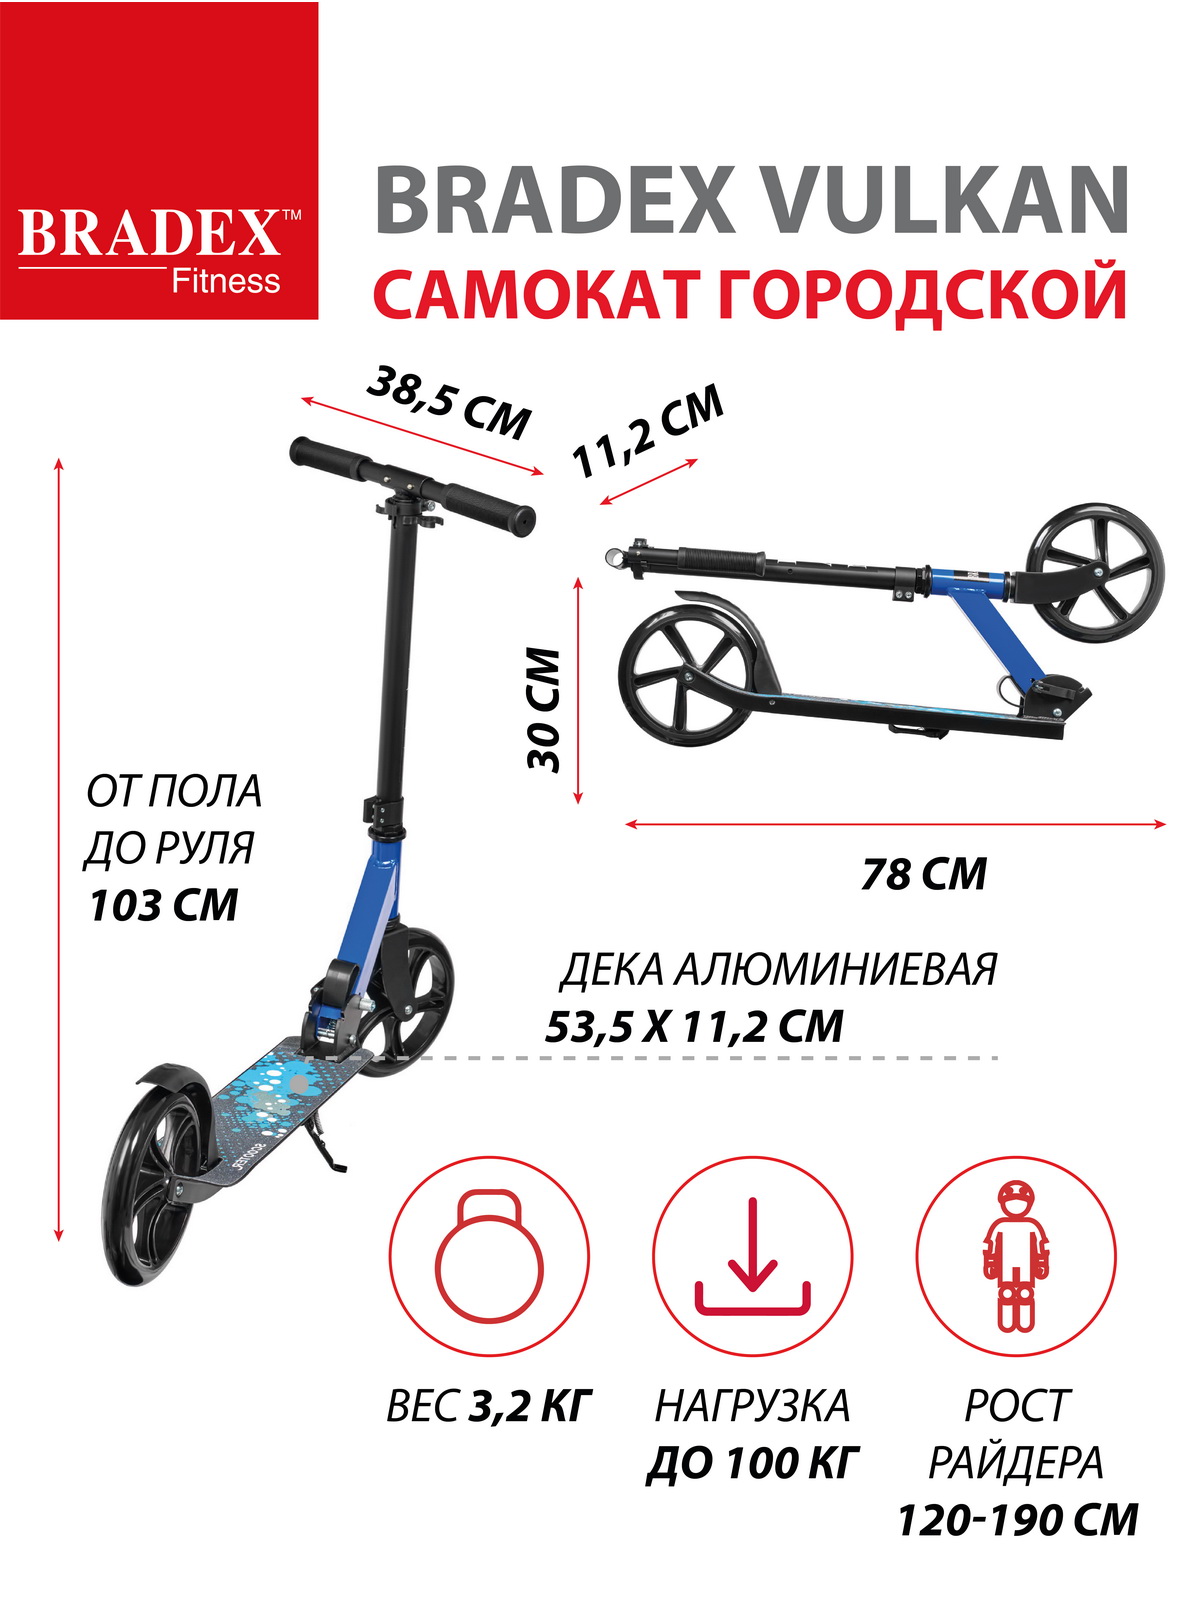 Самокат Bradex городской колеса 200 мм VULKAN - фото 3